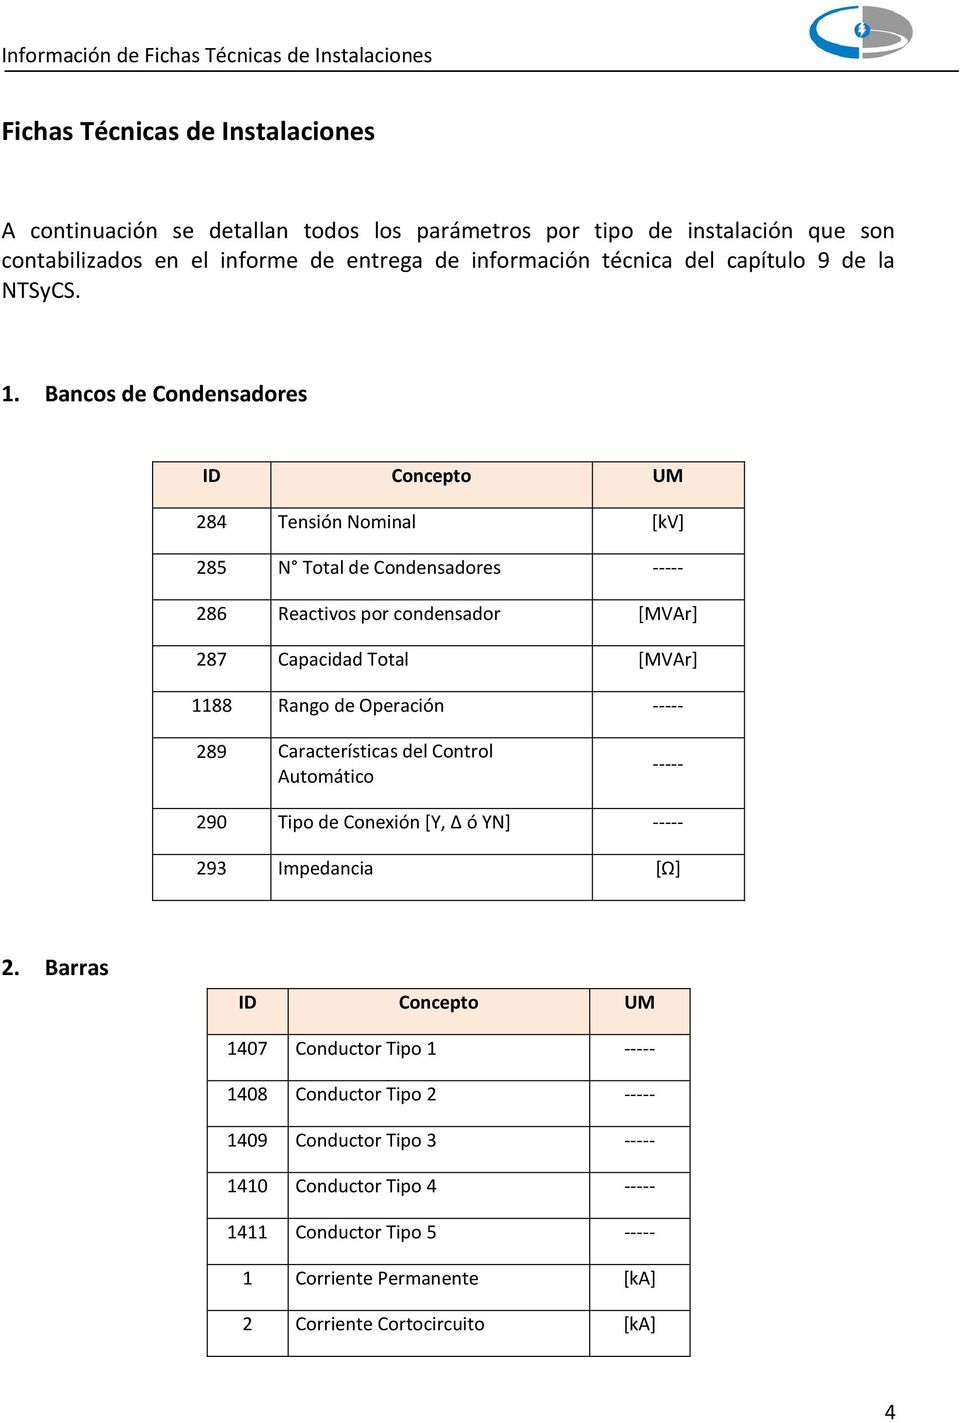 Bancos de Condensadores 284 Tensión Nominal [kv] 285 N Total de Condensadores ----- 286 Reactivos por condensador [MVAr] 287 Capacidad Total [MVAr] 1188 Rango de Operación